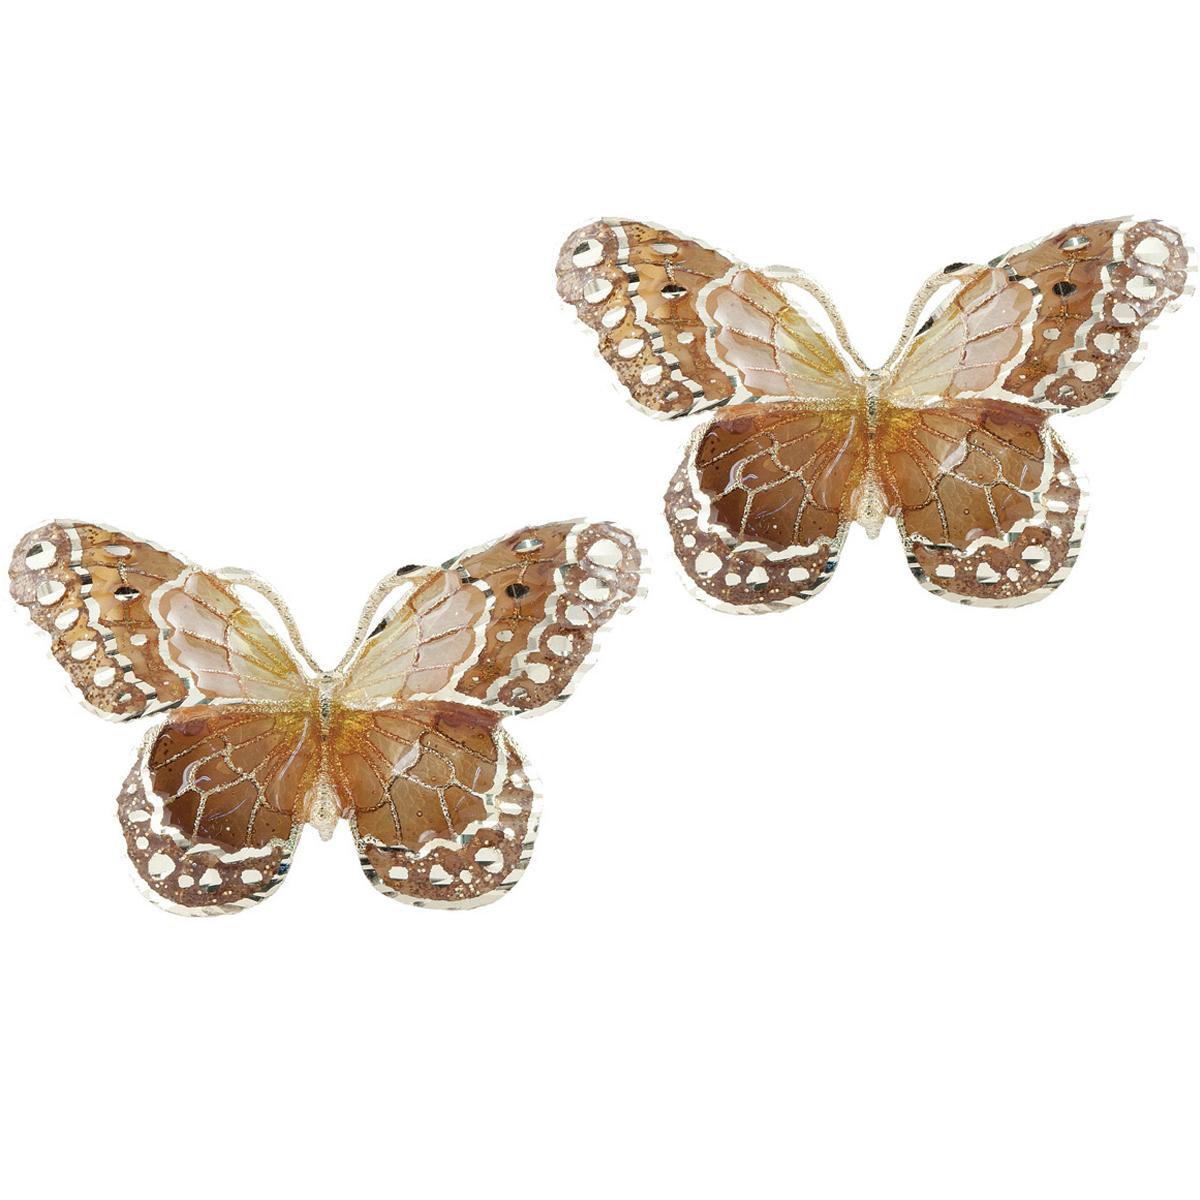 Butterfly earrings in 18kt yellow gold, cathedral enamel - OE4089-MG